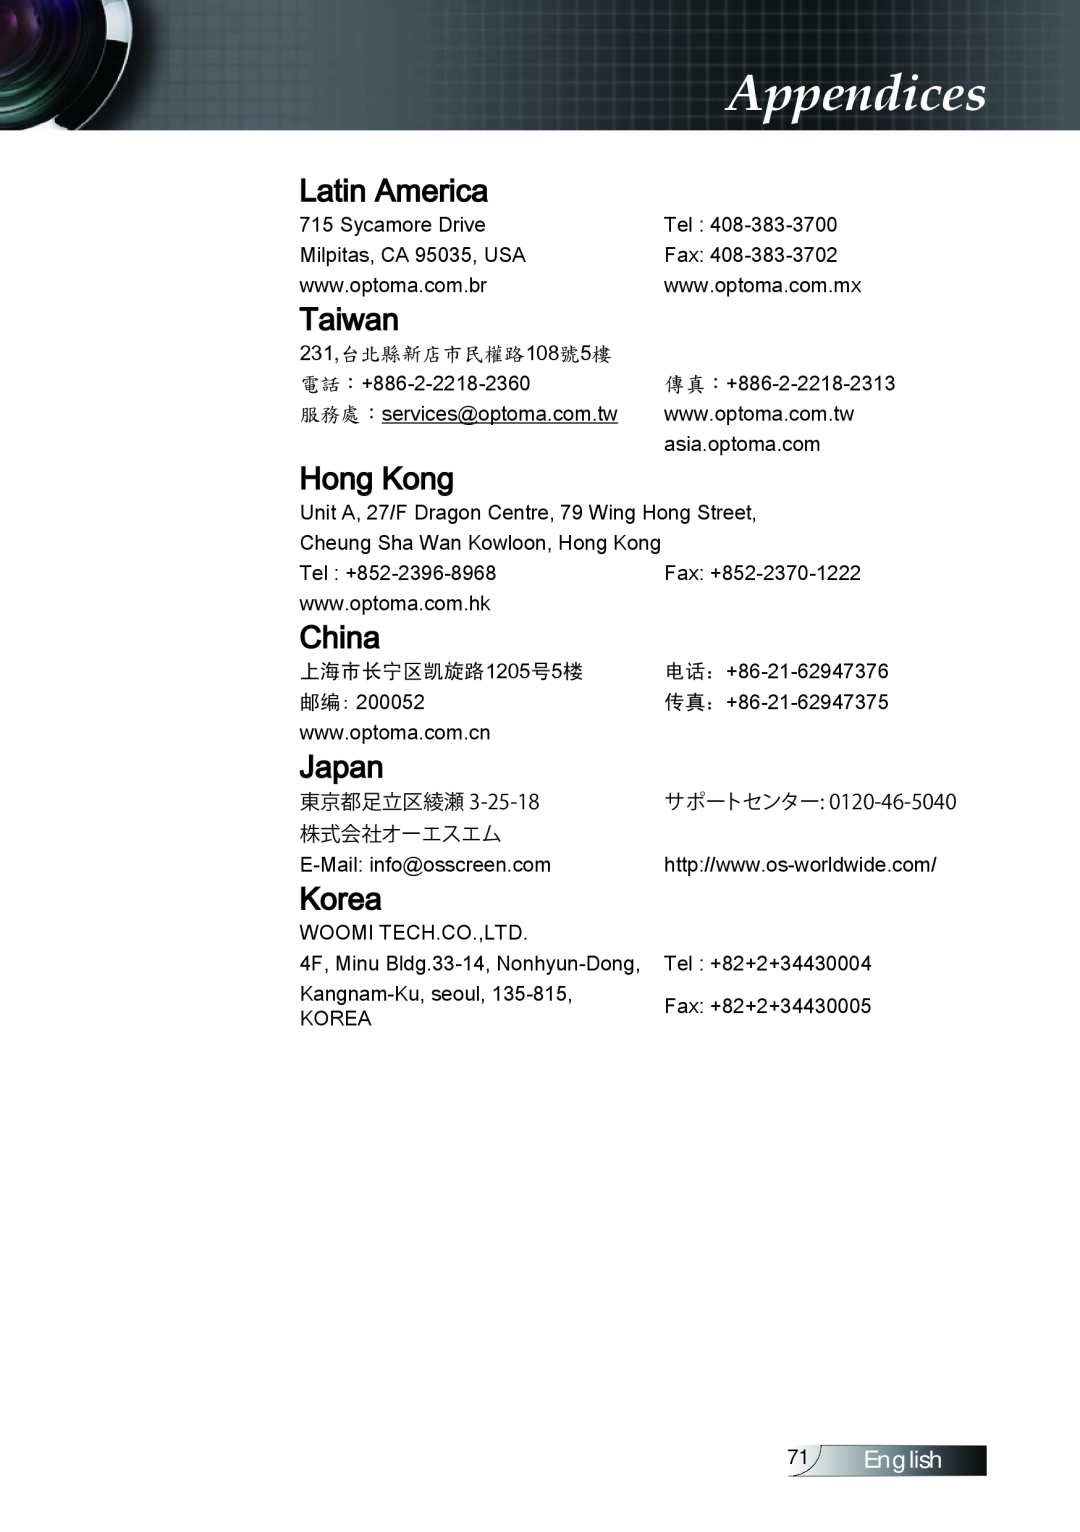 Optoma Technology TX779P3D manual Latin America, Taiwan, Hong Kong, China, Japan, Korea, Appendices, English 